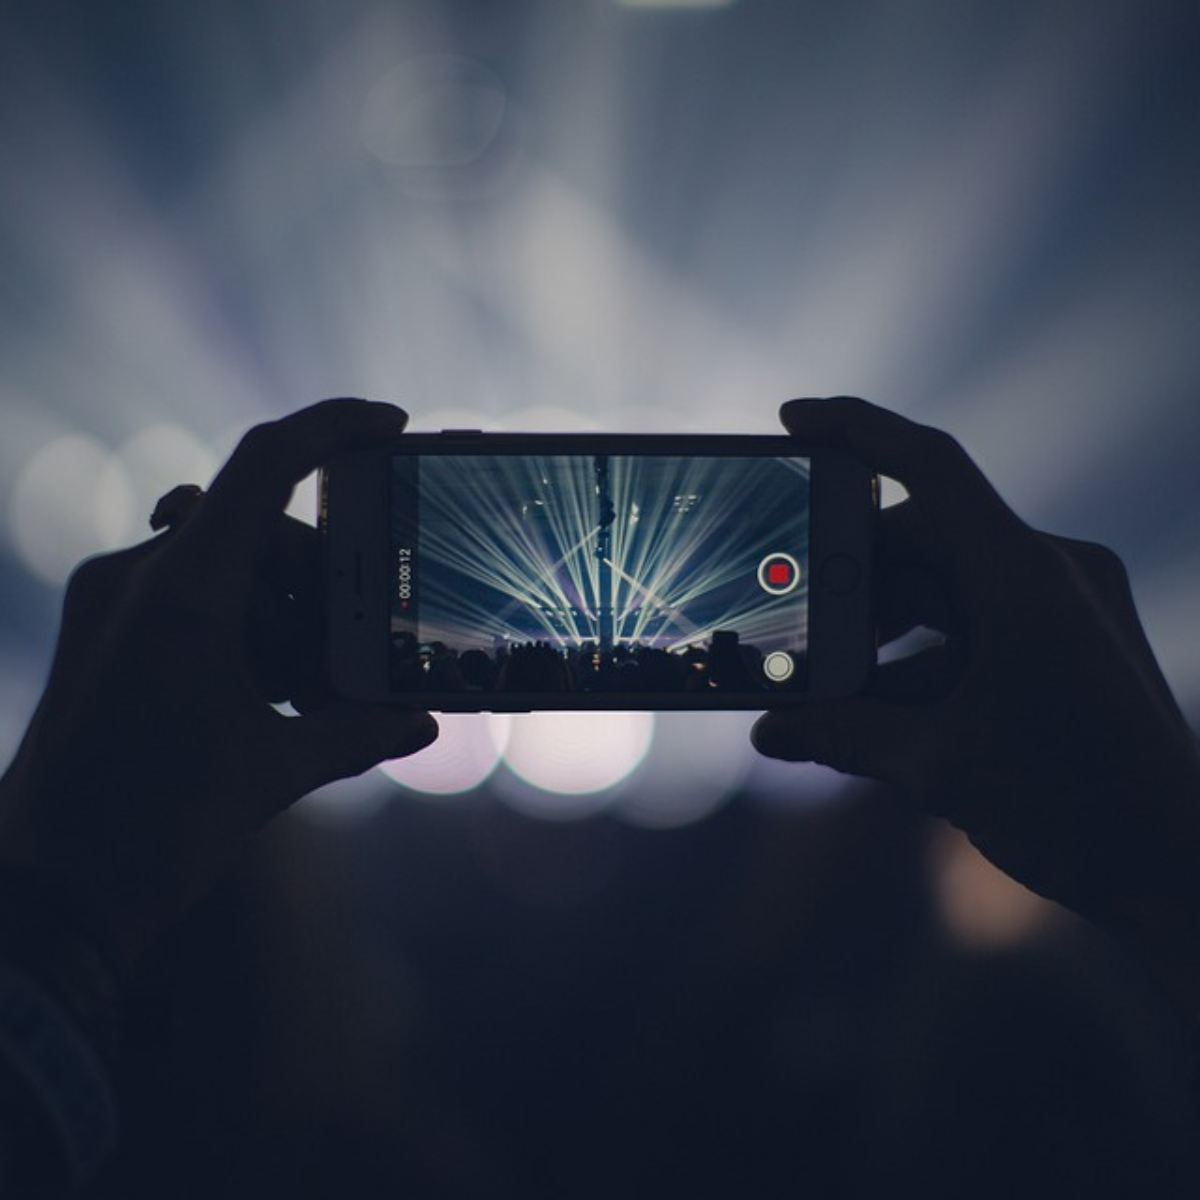 Video-Content auf Facebook. Auf dem Bild ist ein Handy zu sehen, welches auf einem Konzert eine Videoaufnahme macht.